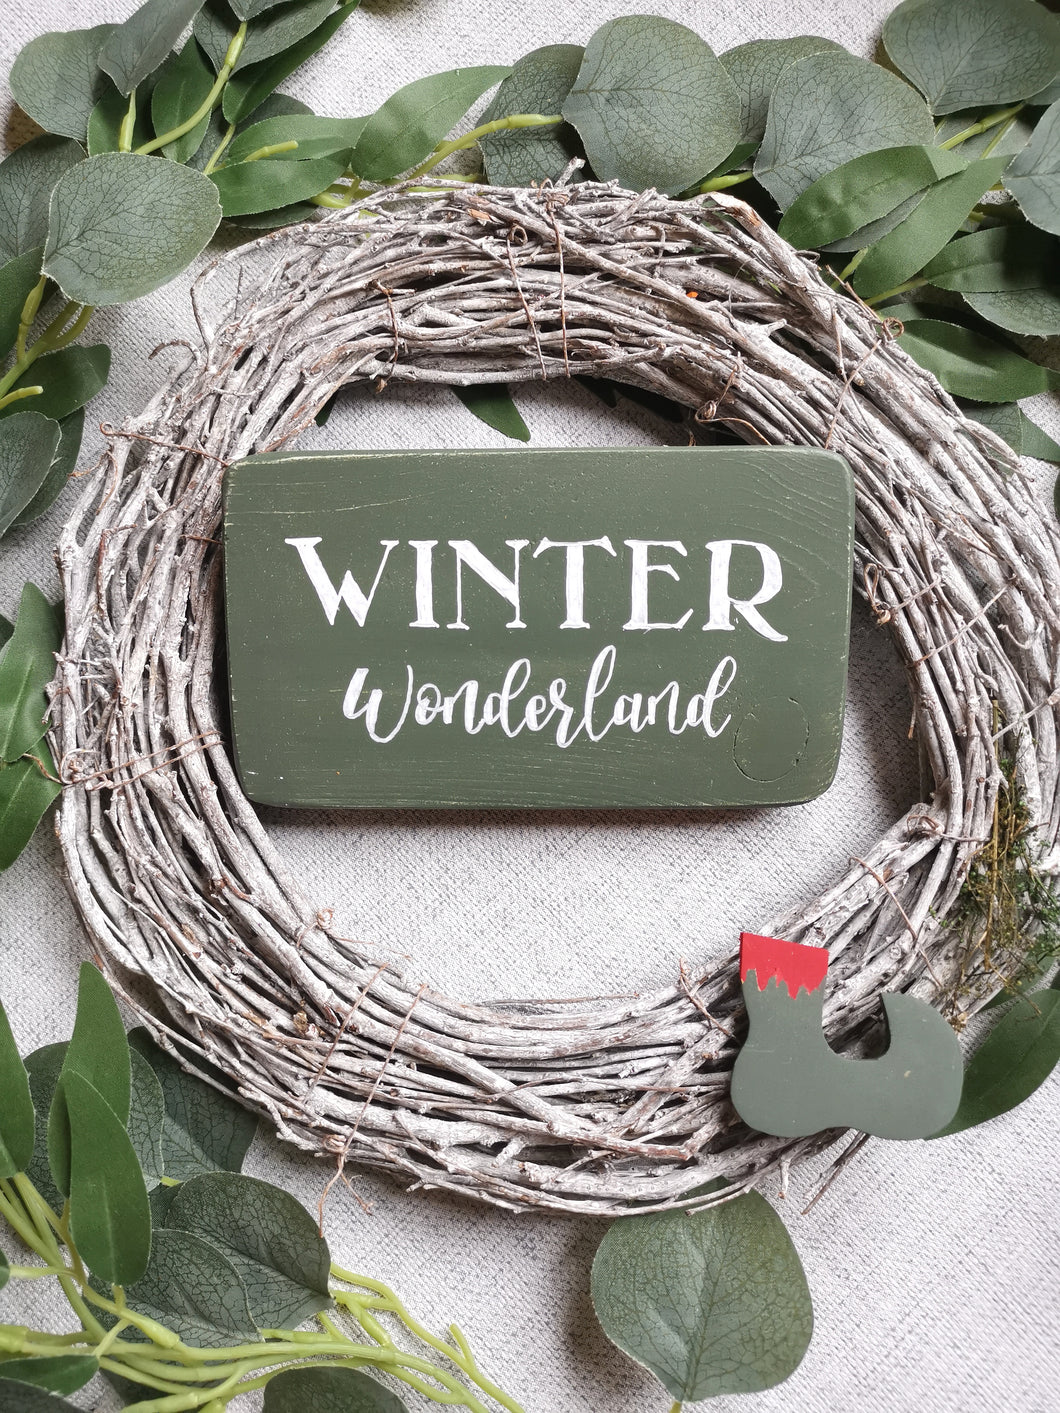 Winter Wonderland wooden sign